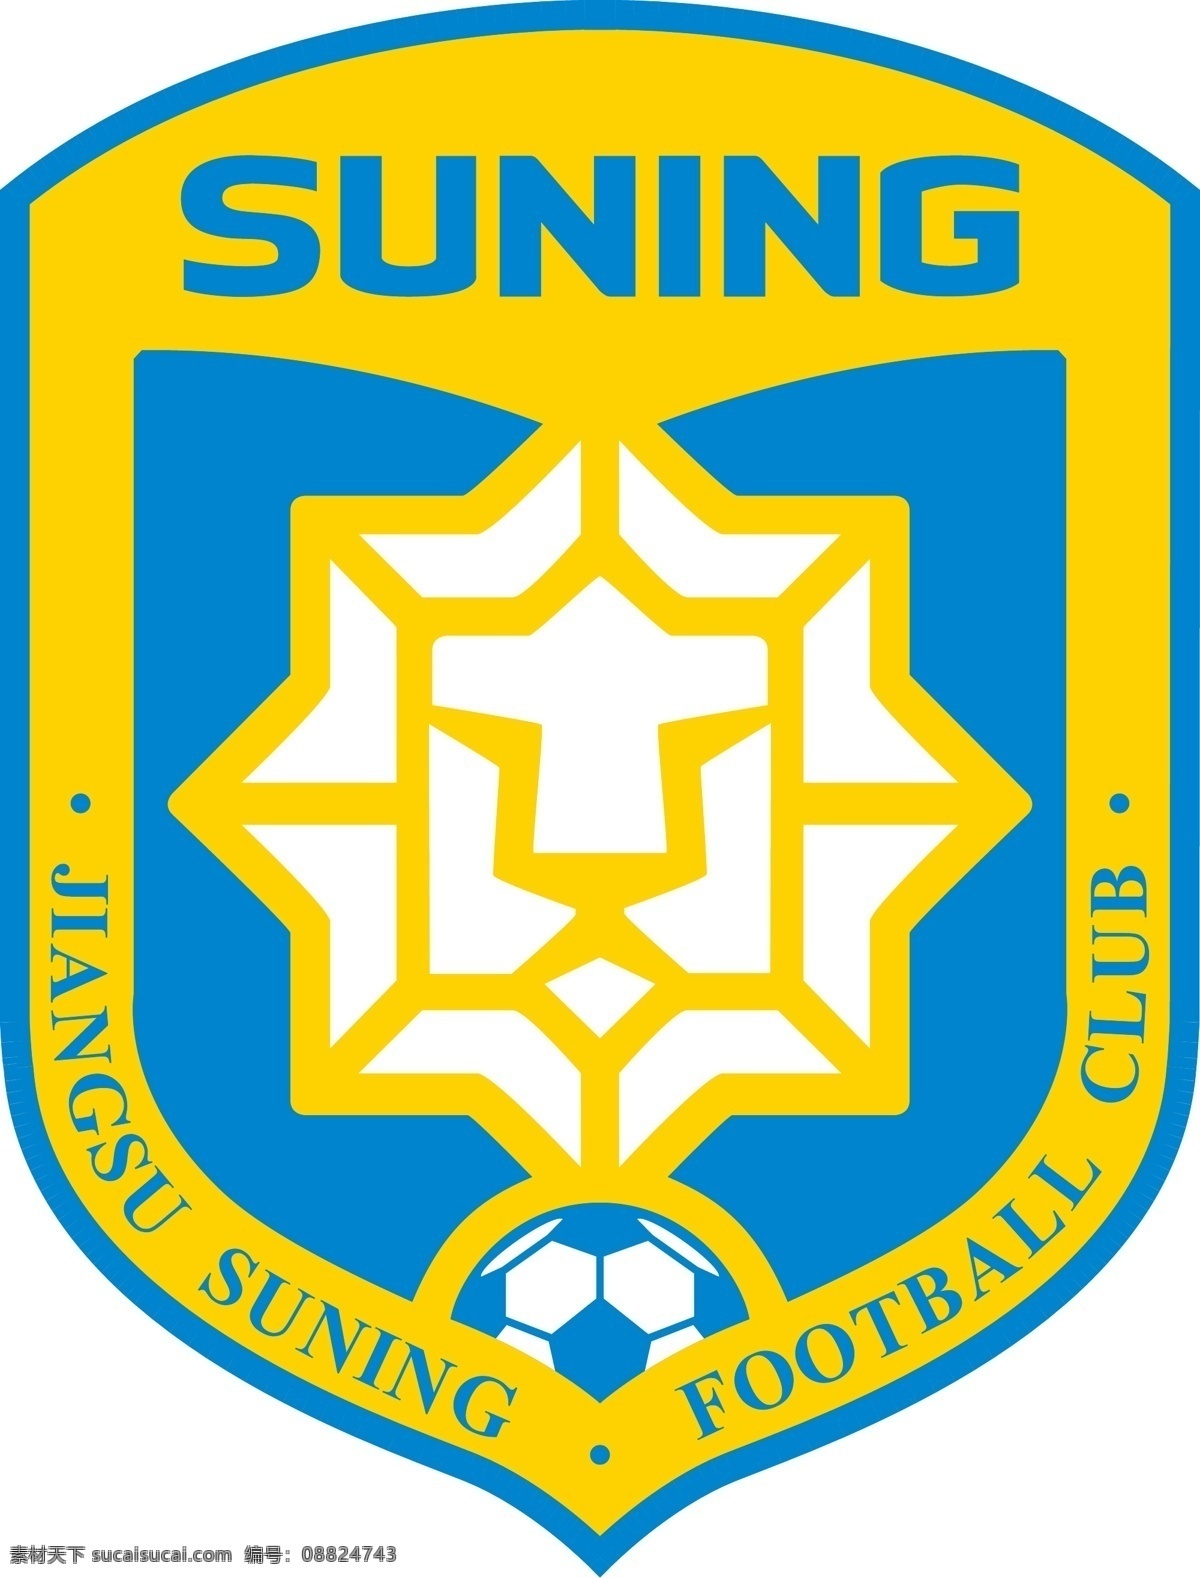 江苏 苏宁 足球 俱乐部 logo 中超 队徽 标志 矢量 矢量标志 标志图标 企业